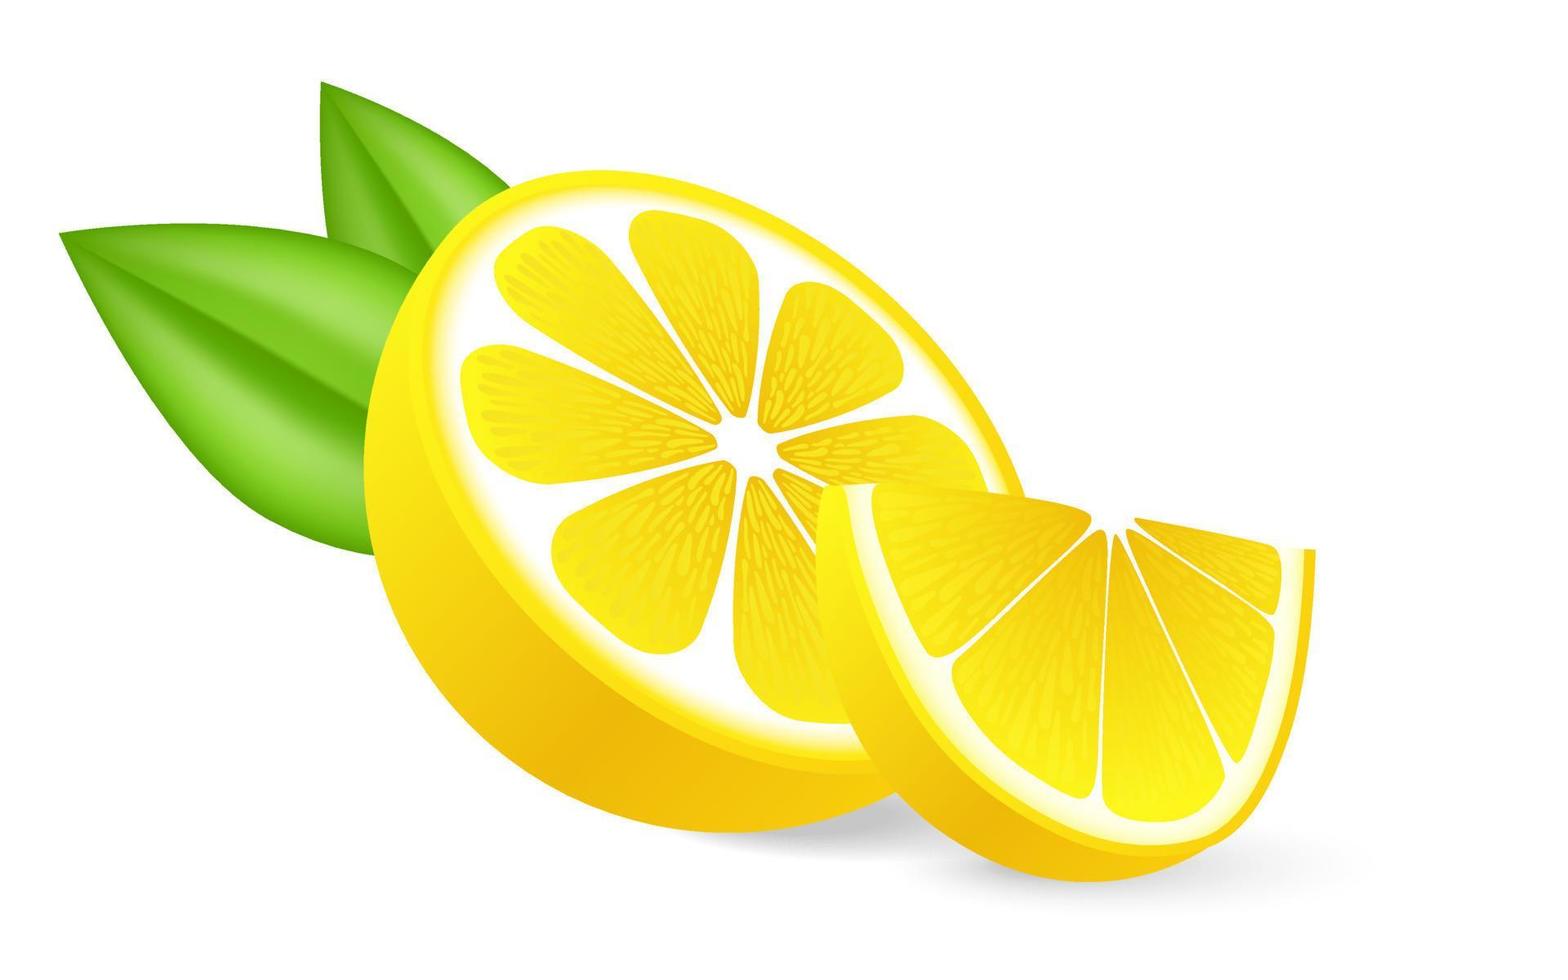 limón realista en rodajas con hoja verde, fruta fresca agria, ralladura de color amarillo brillante, ilustración vectorial de fruta agria de limón aislada en fondo blanco para el mercado de agricultores de diseño de envases de cosméticos y alimentos. vector